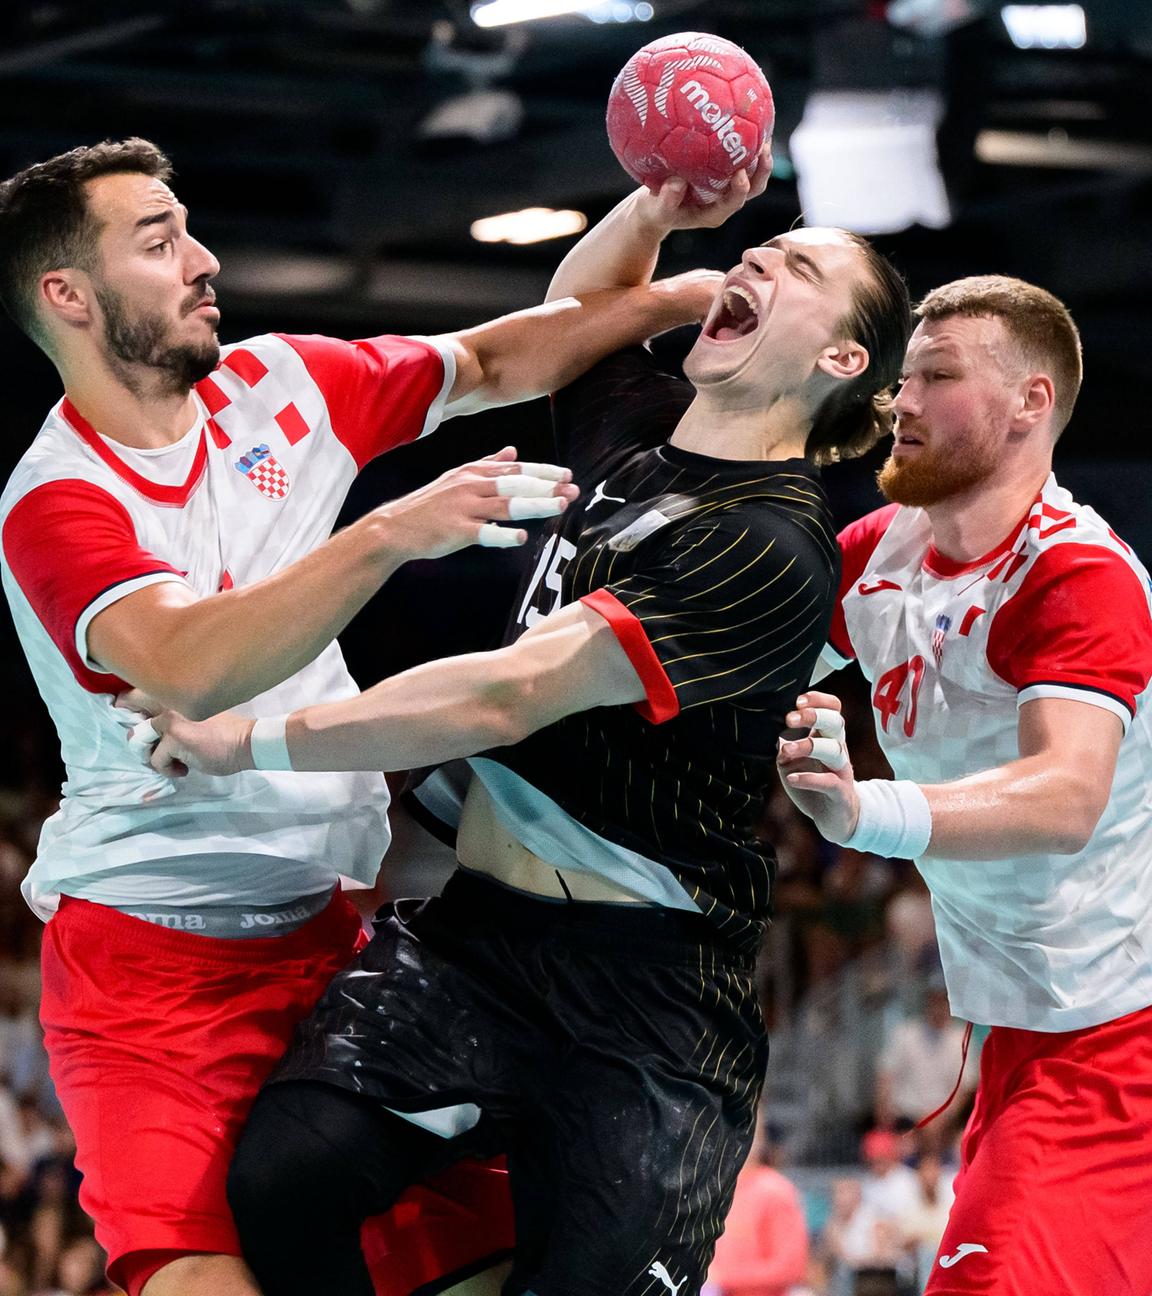 Der deutsche Handballer Juri Knorr im Zweikampf mit den Kroaten Zvonimir Srna und Nikola Grahovac.